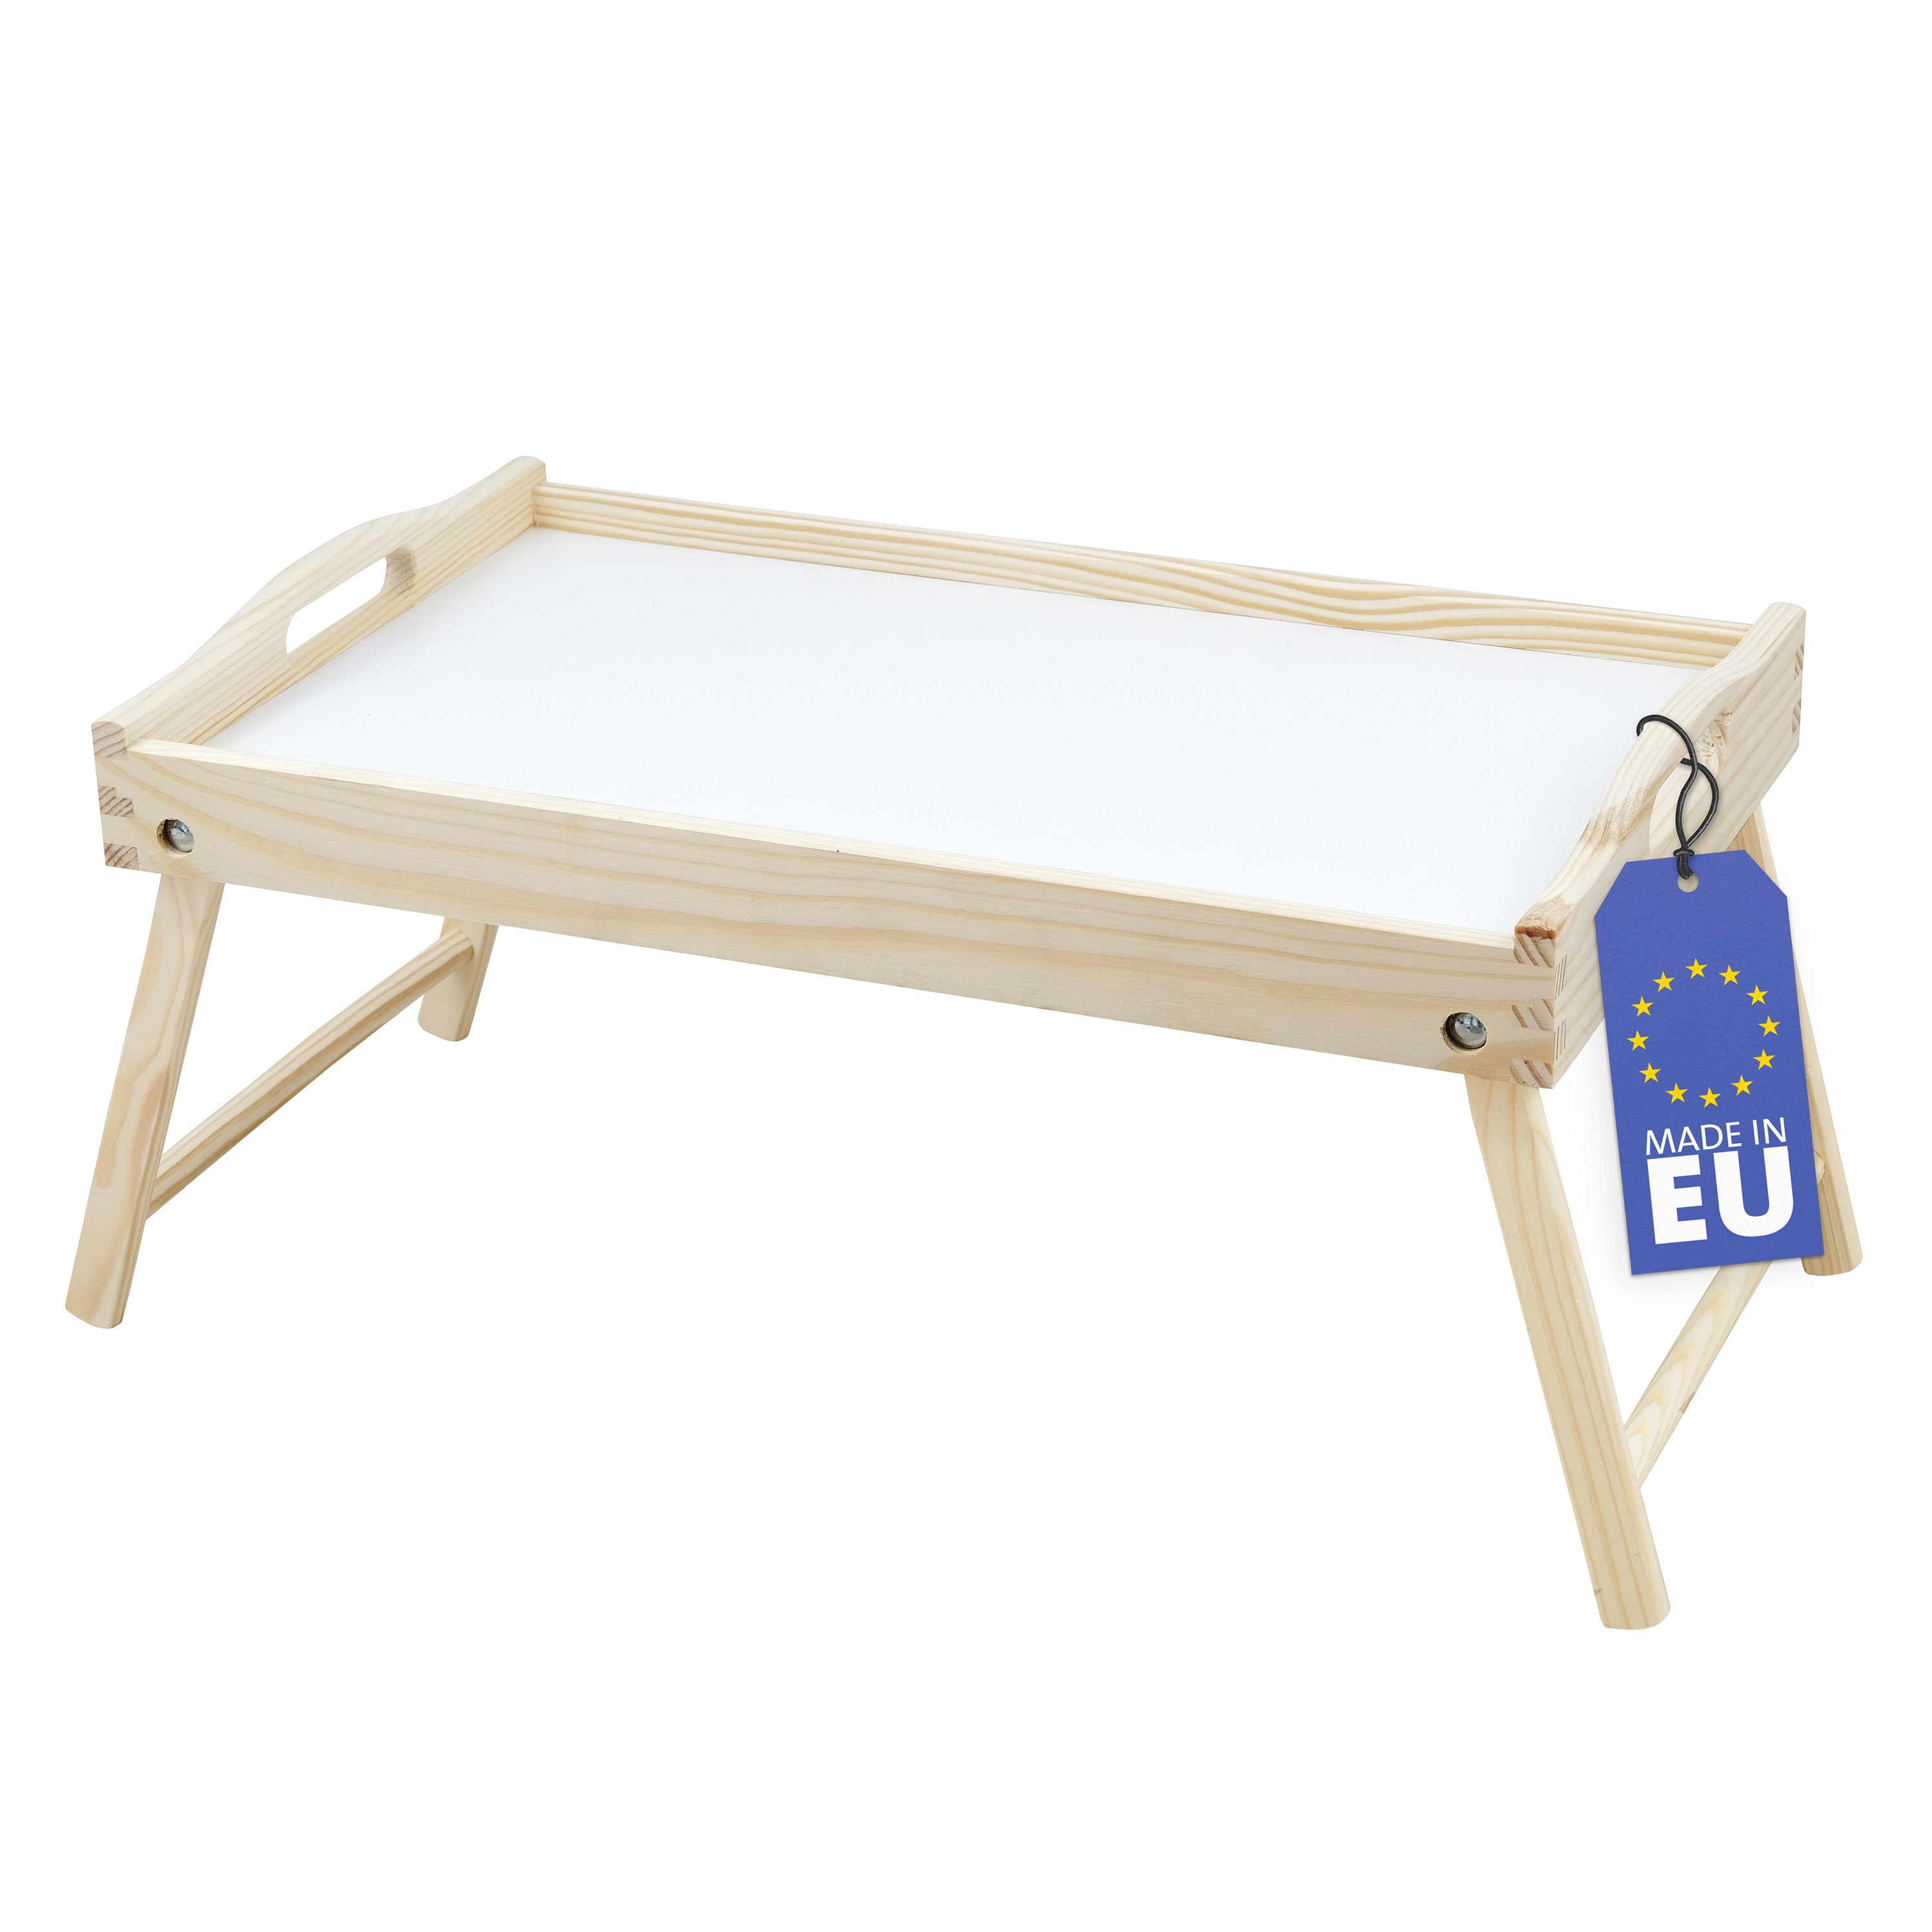 Rubberneck Tablett für Bett und Büro (natur/weiß)